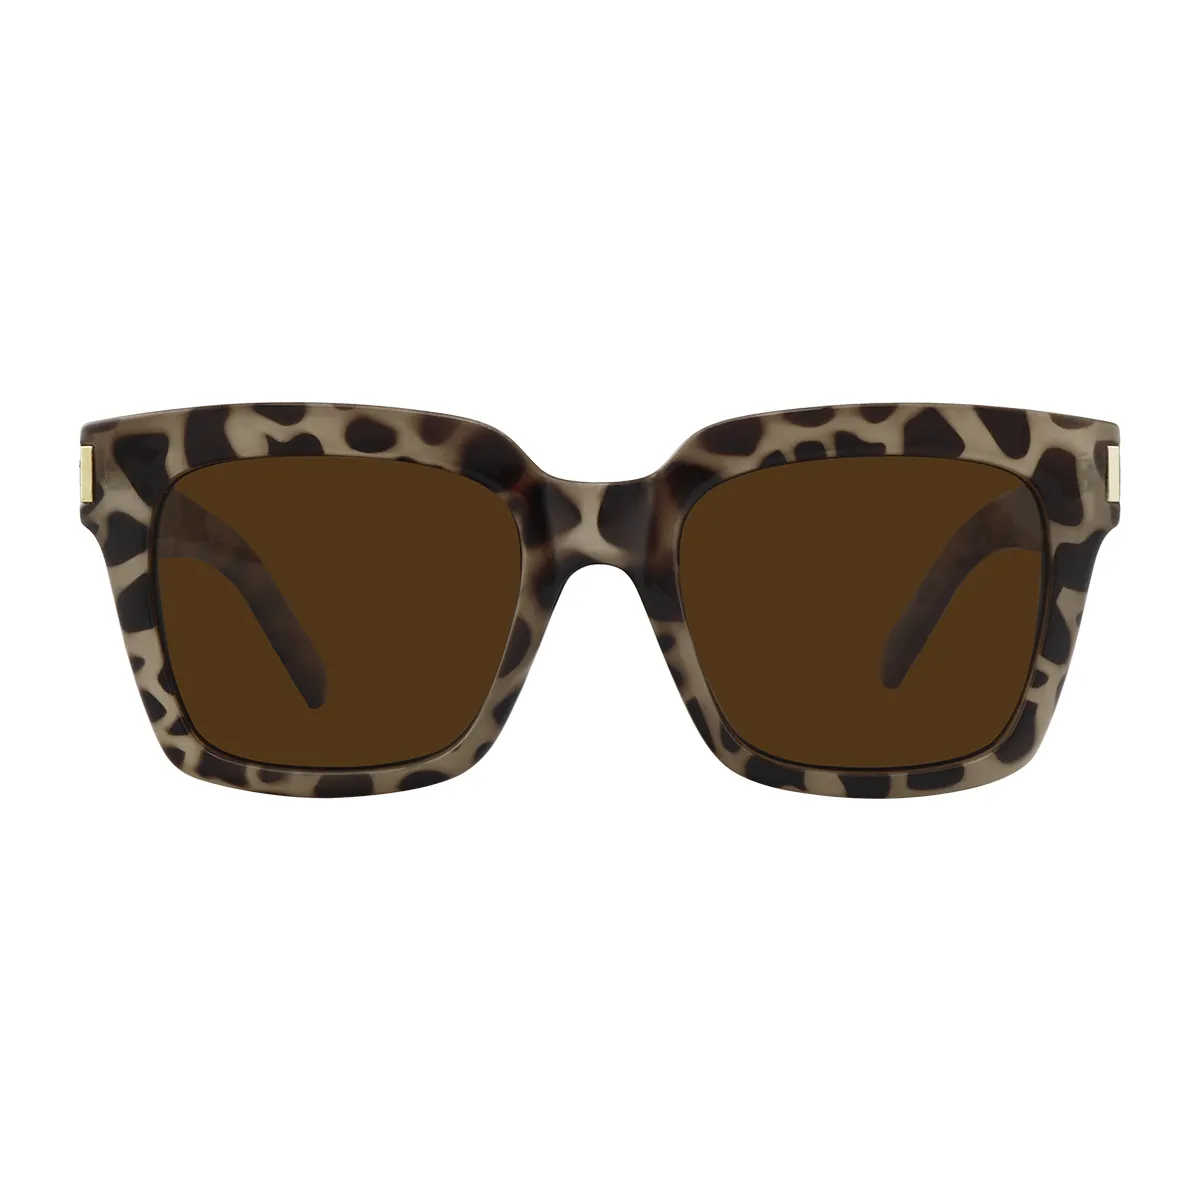 Monroe - Square Tortoiseshell Sunglasses for Women